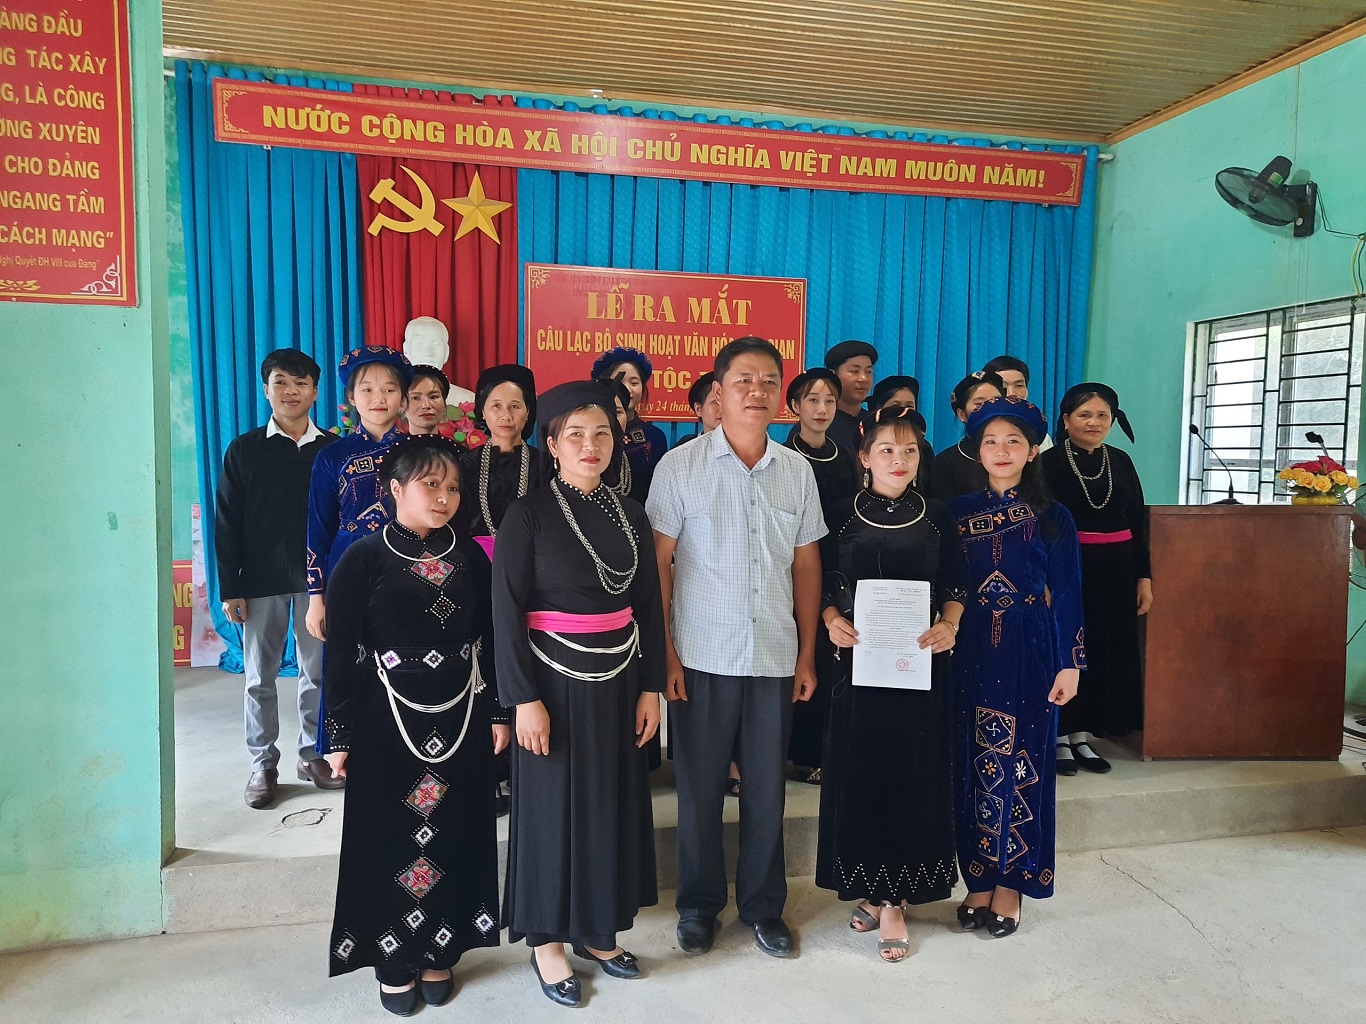 Ra mắt Câu lạc bộ sinh hoạt văn hóa dân gian dân tộc Tày thôn Bó Củng thị trấn Yên Phú